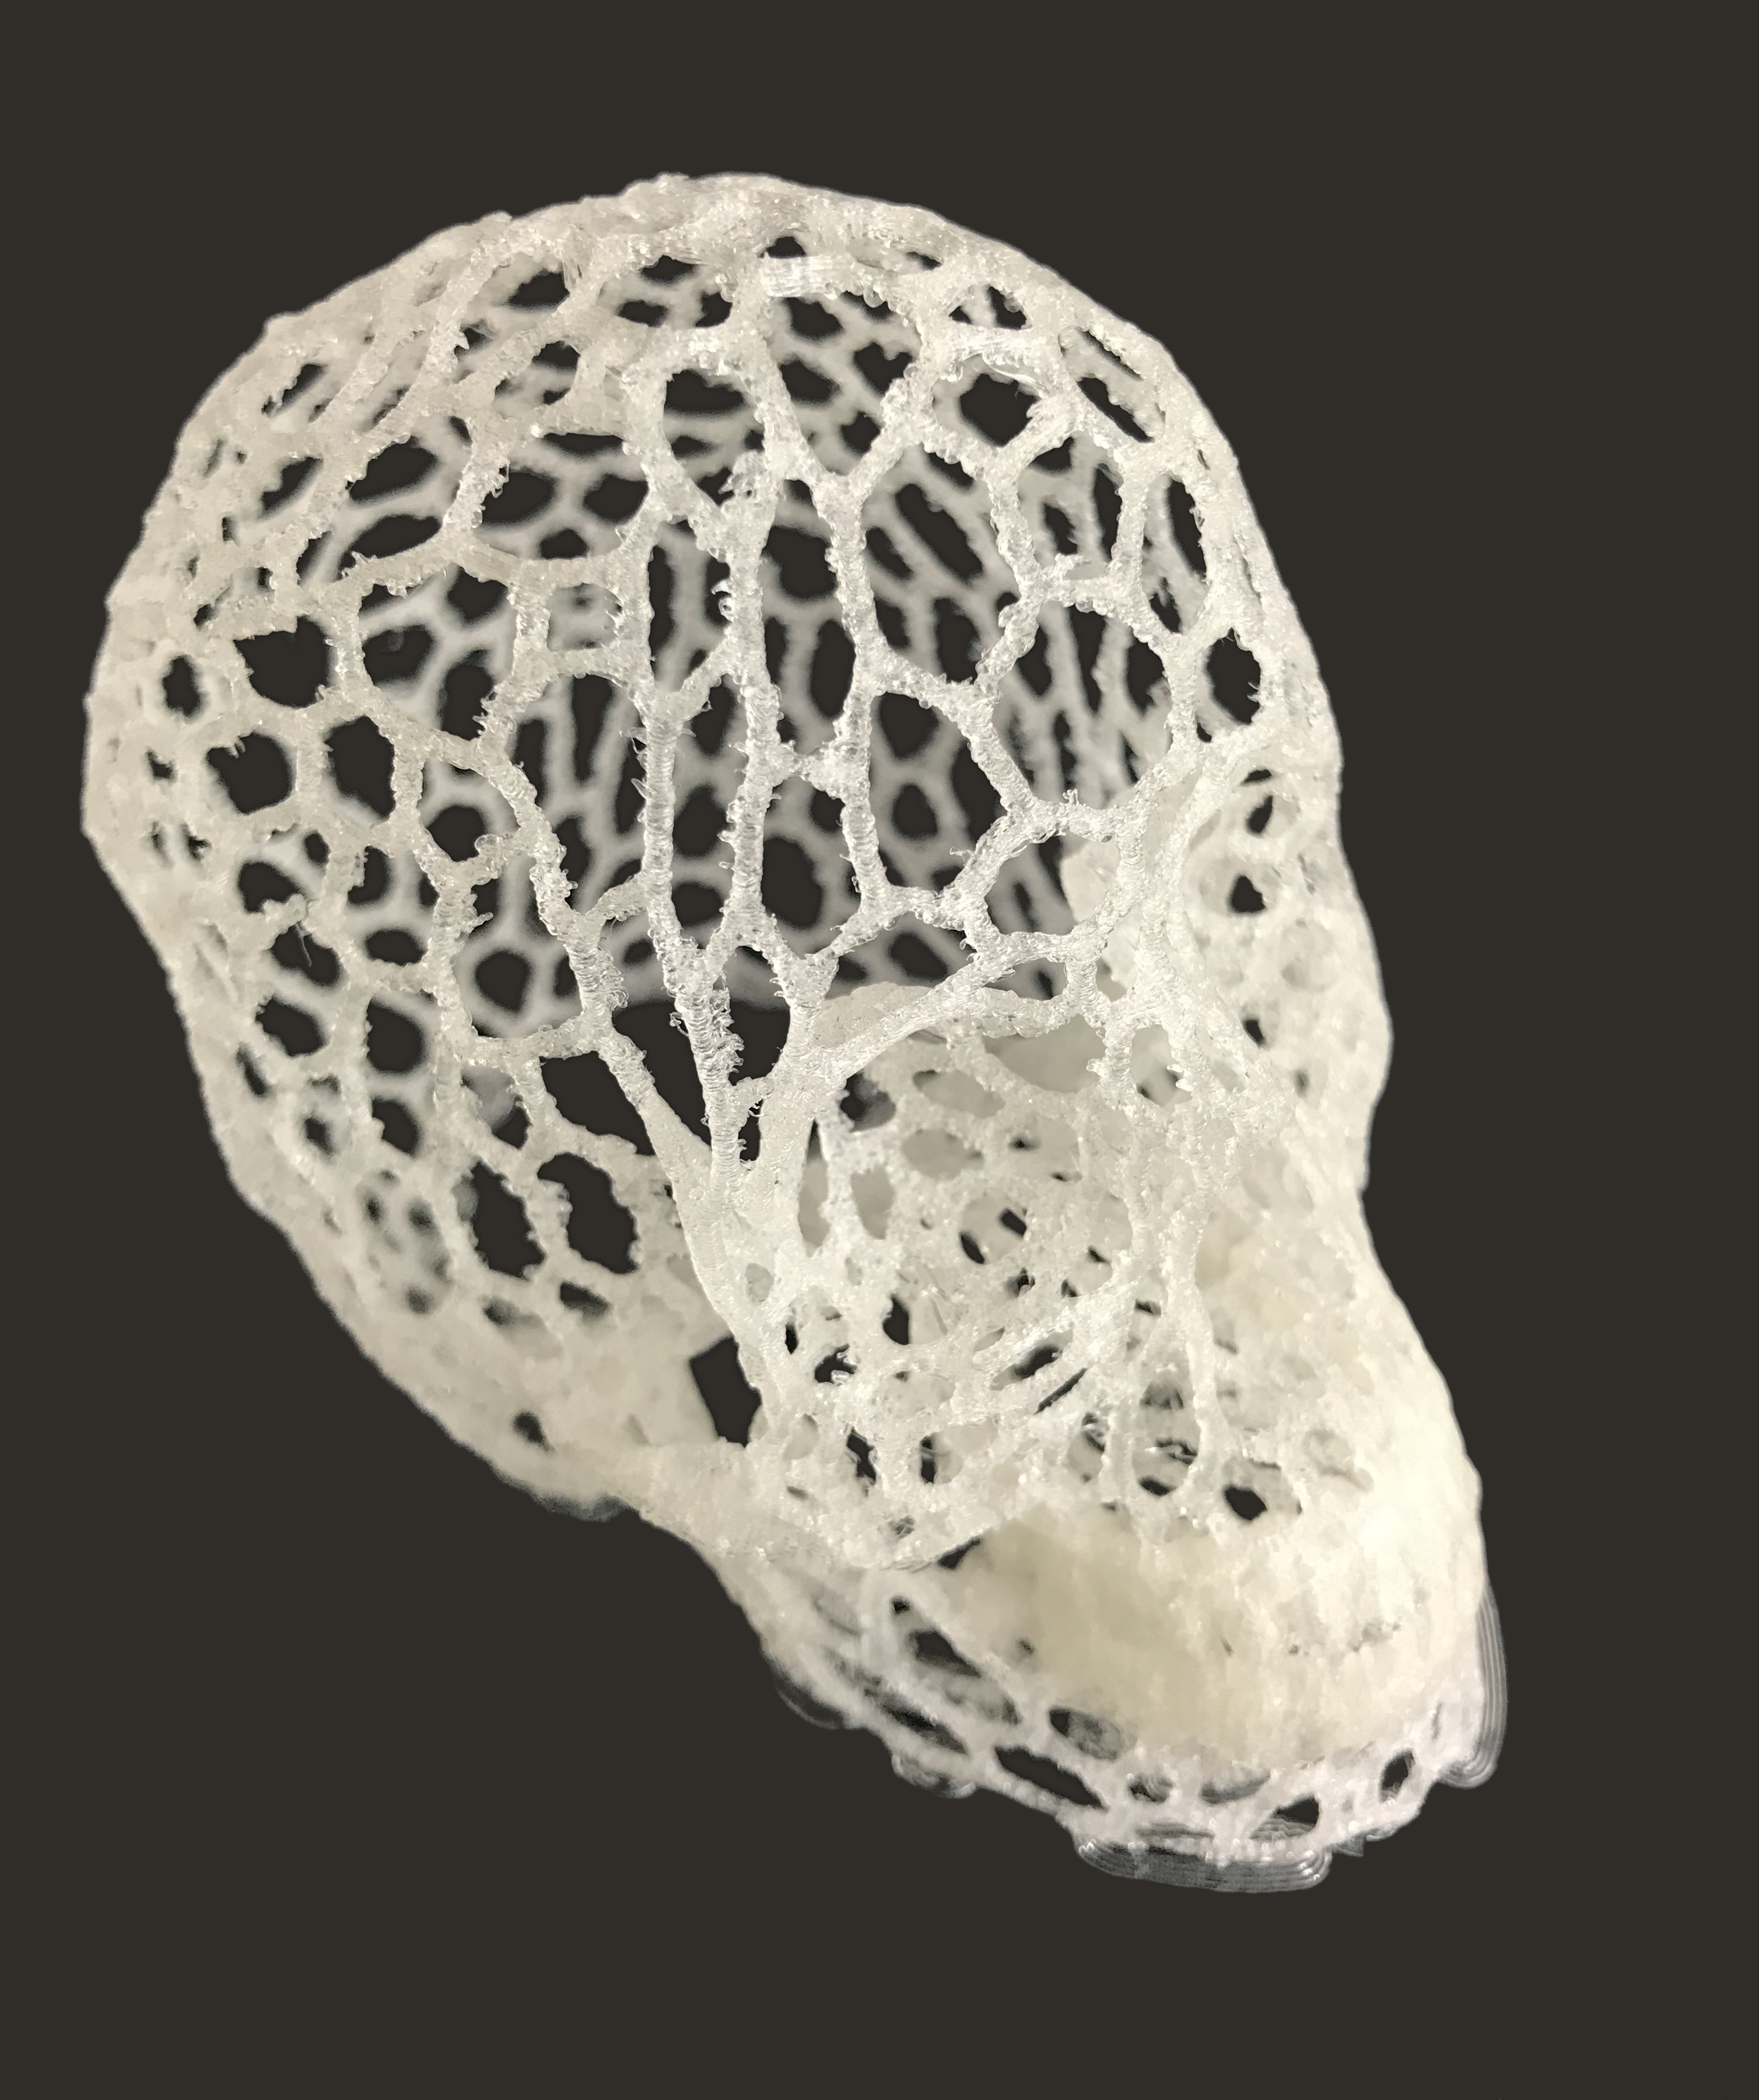 Part 3D printed in Voronoï structure